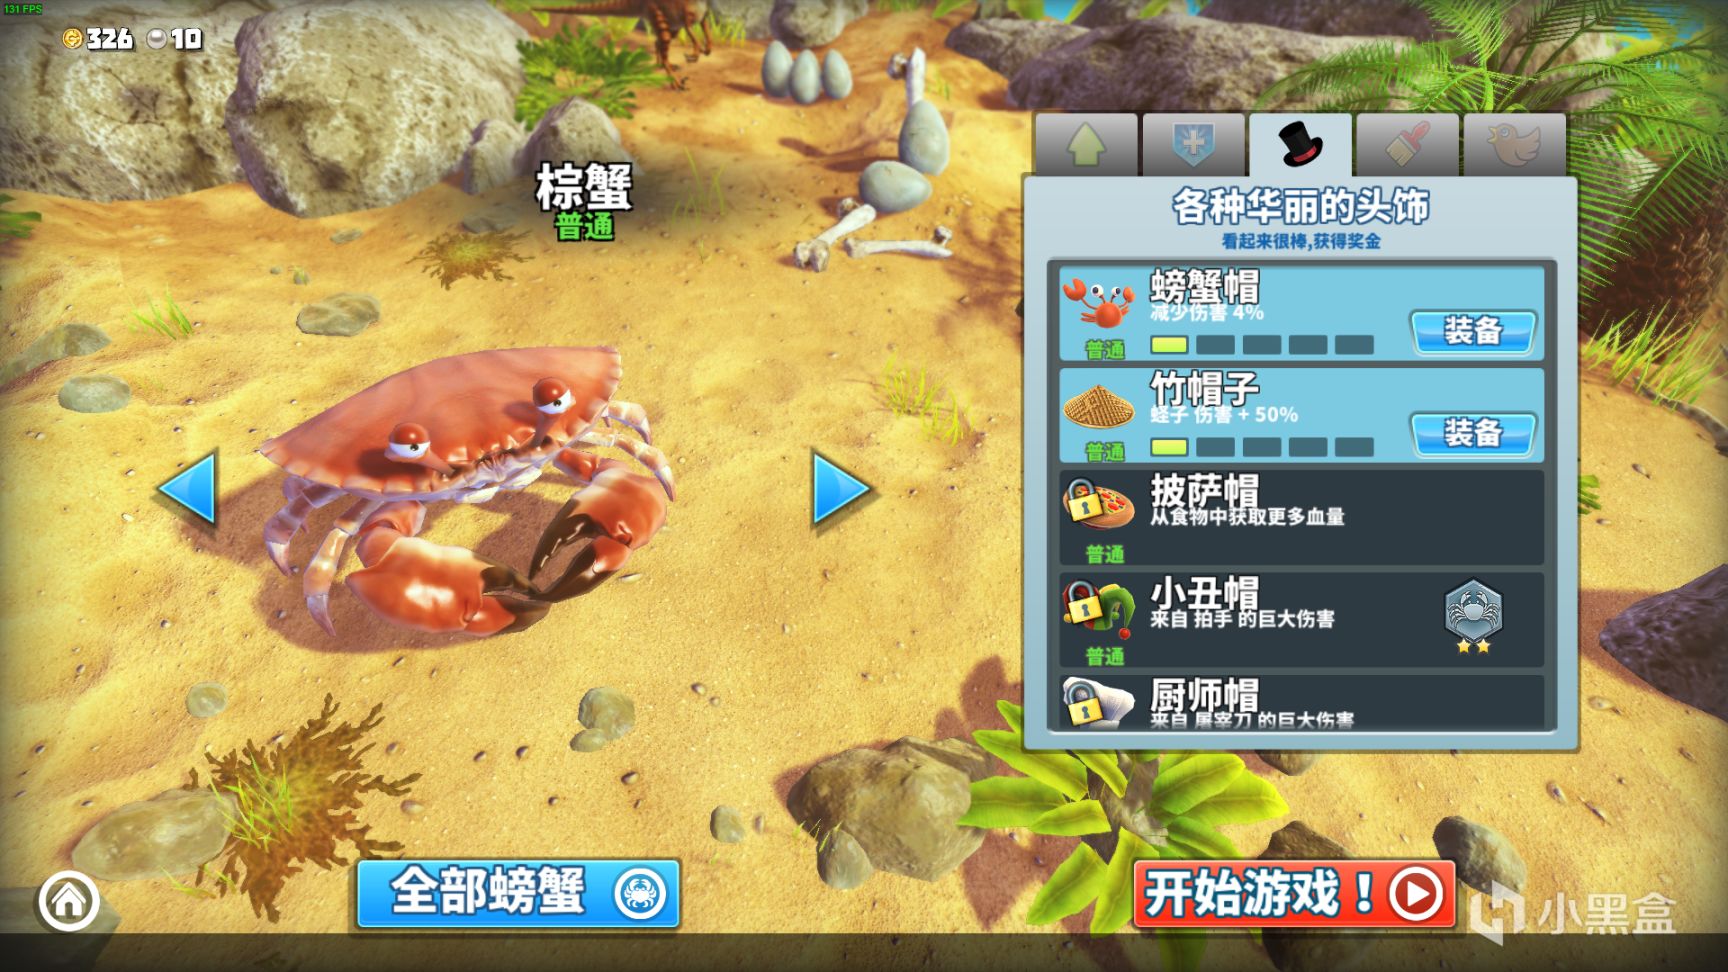 【PC游戏】steam免费有趣游戏《King of Crabs 螃蟹之王》无限欢乐，来吖 一起快乐鸭~-第26张